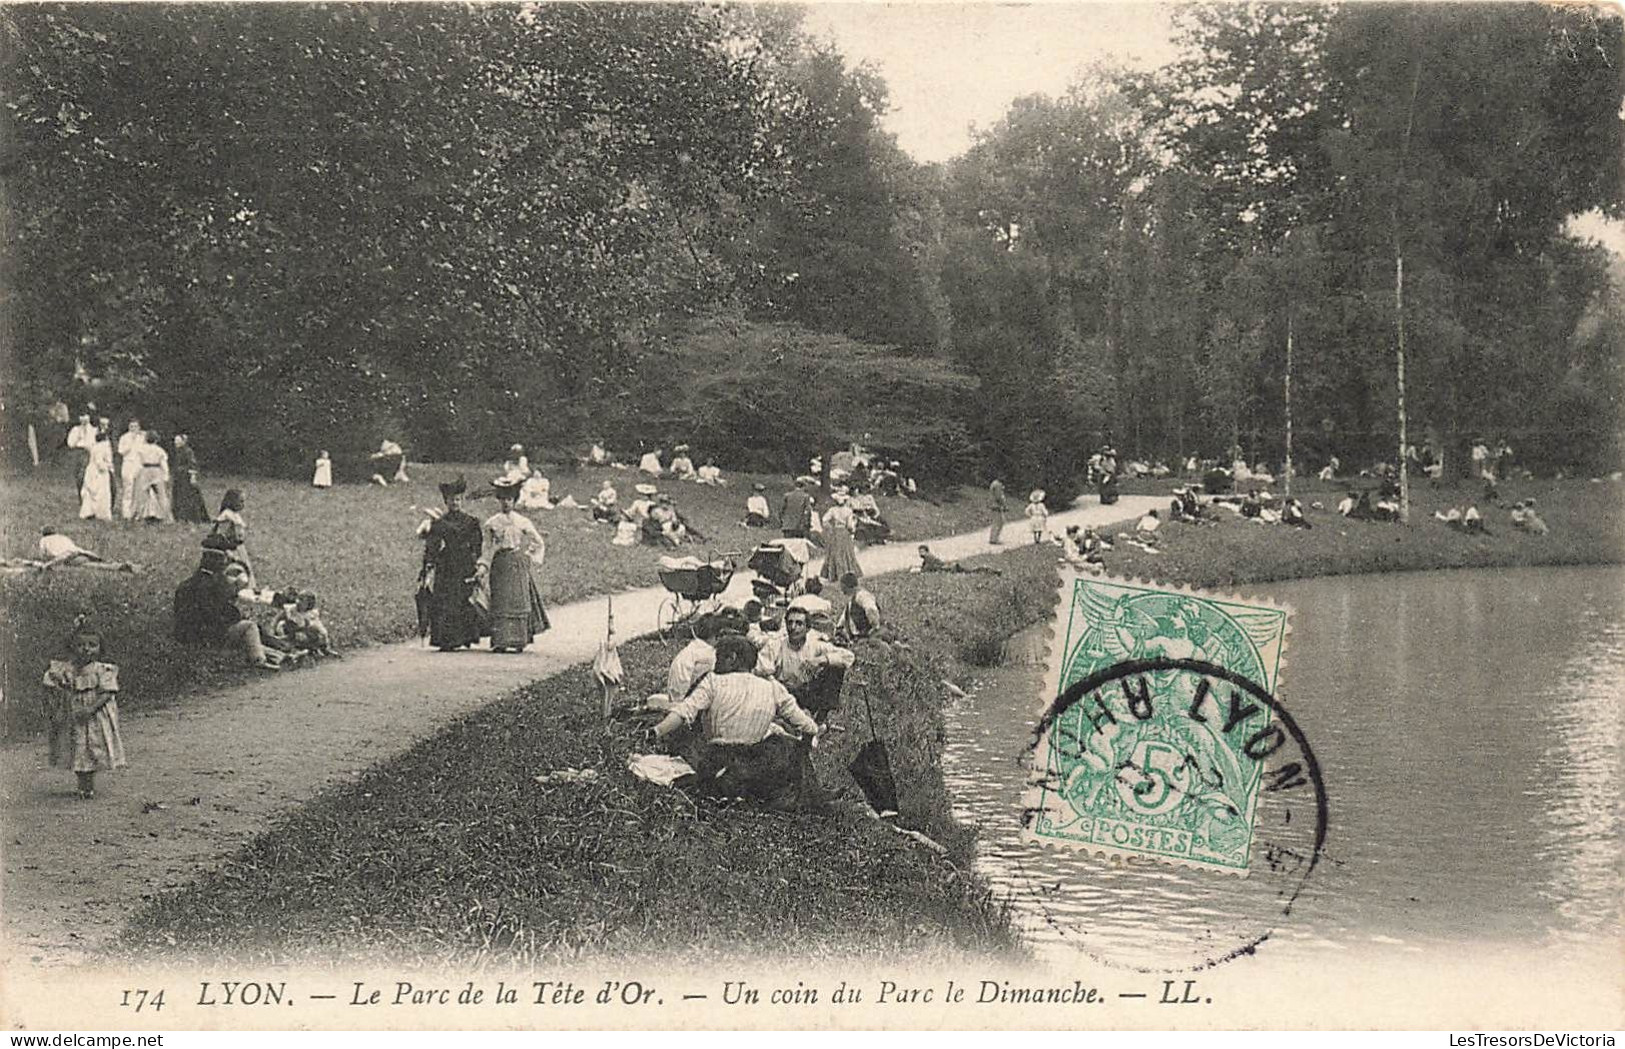 FRANCE - Lyon - Le Parc De La Tête D'Or - Un Coin Du Parc Le Dimanche - LL - Animé -  Carte Postale Ancienne - Lyon 1